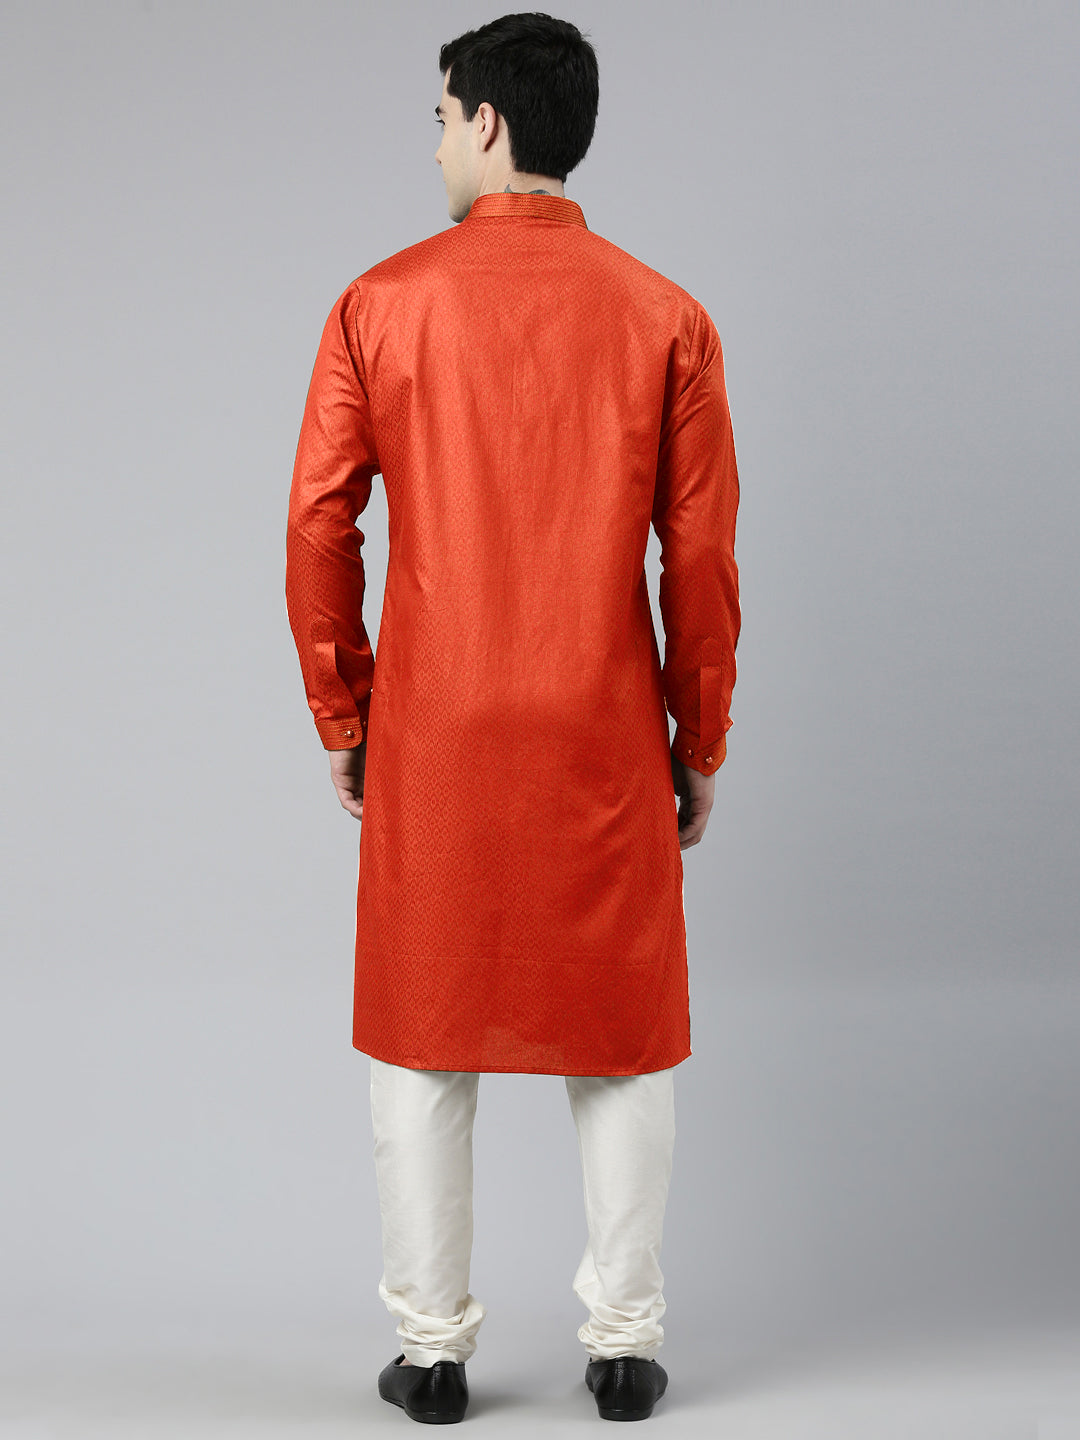 Rustic Cotton Pathani Kurta Set with Patch pocket